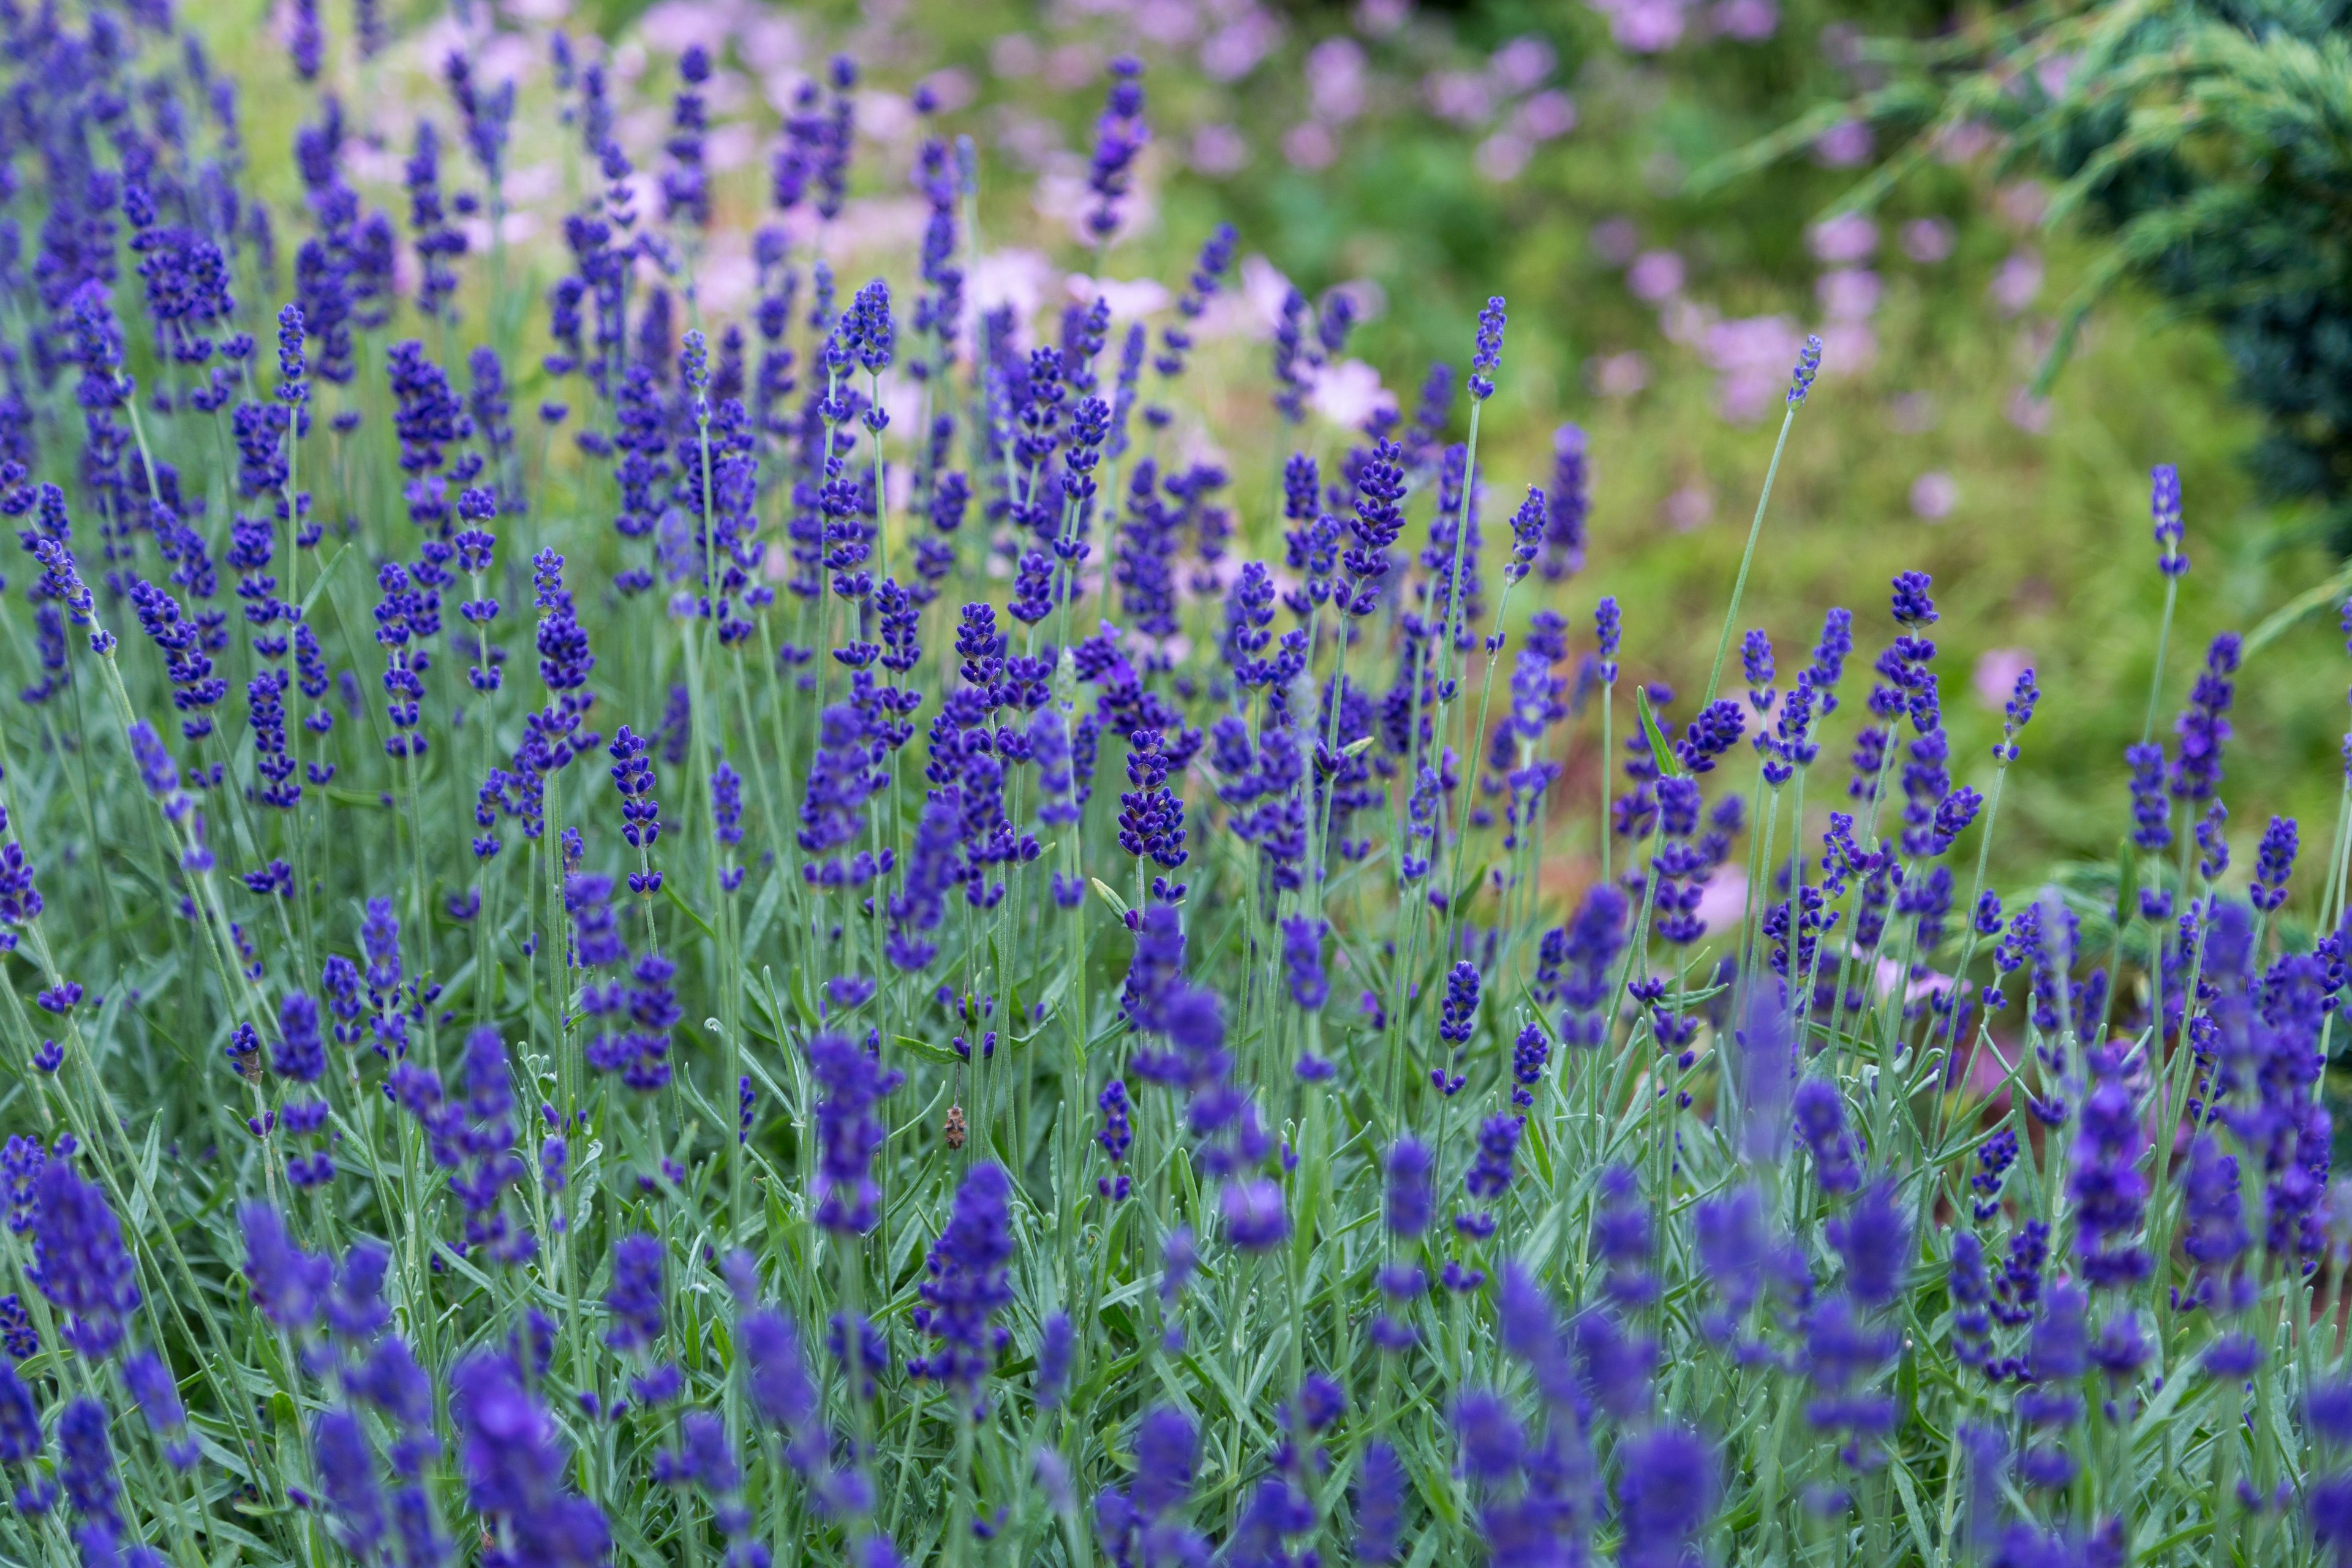 Purple flowers in a field.